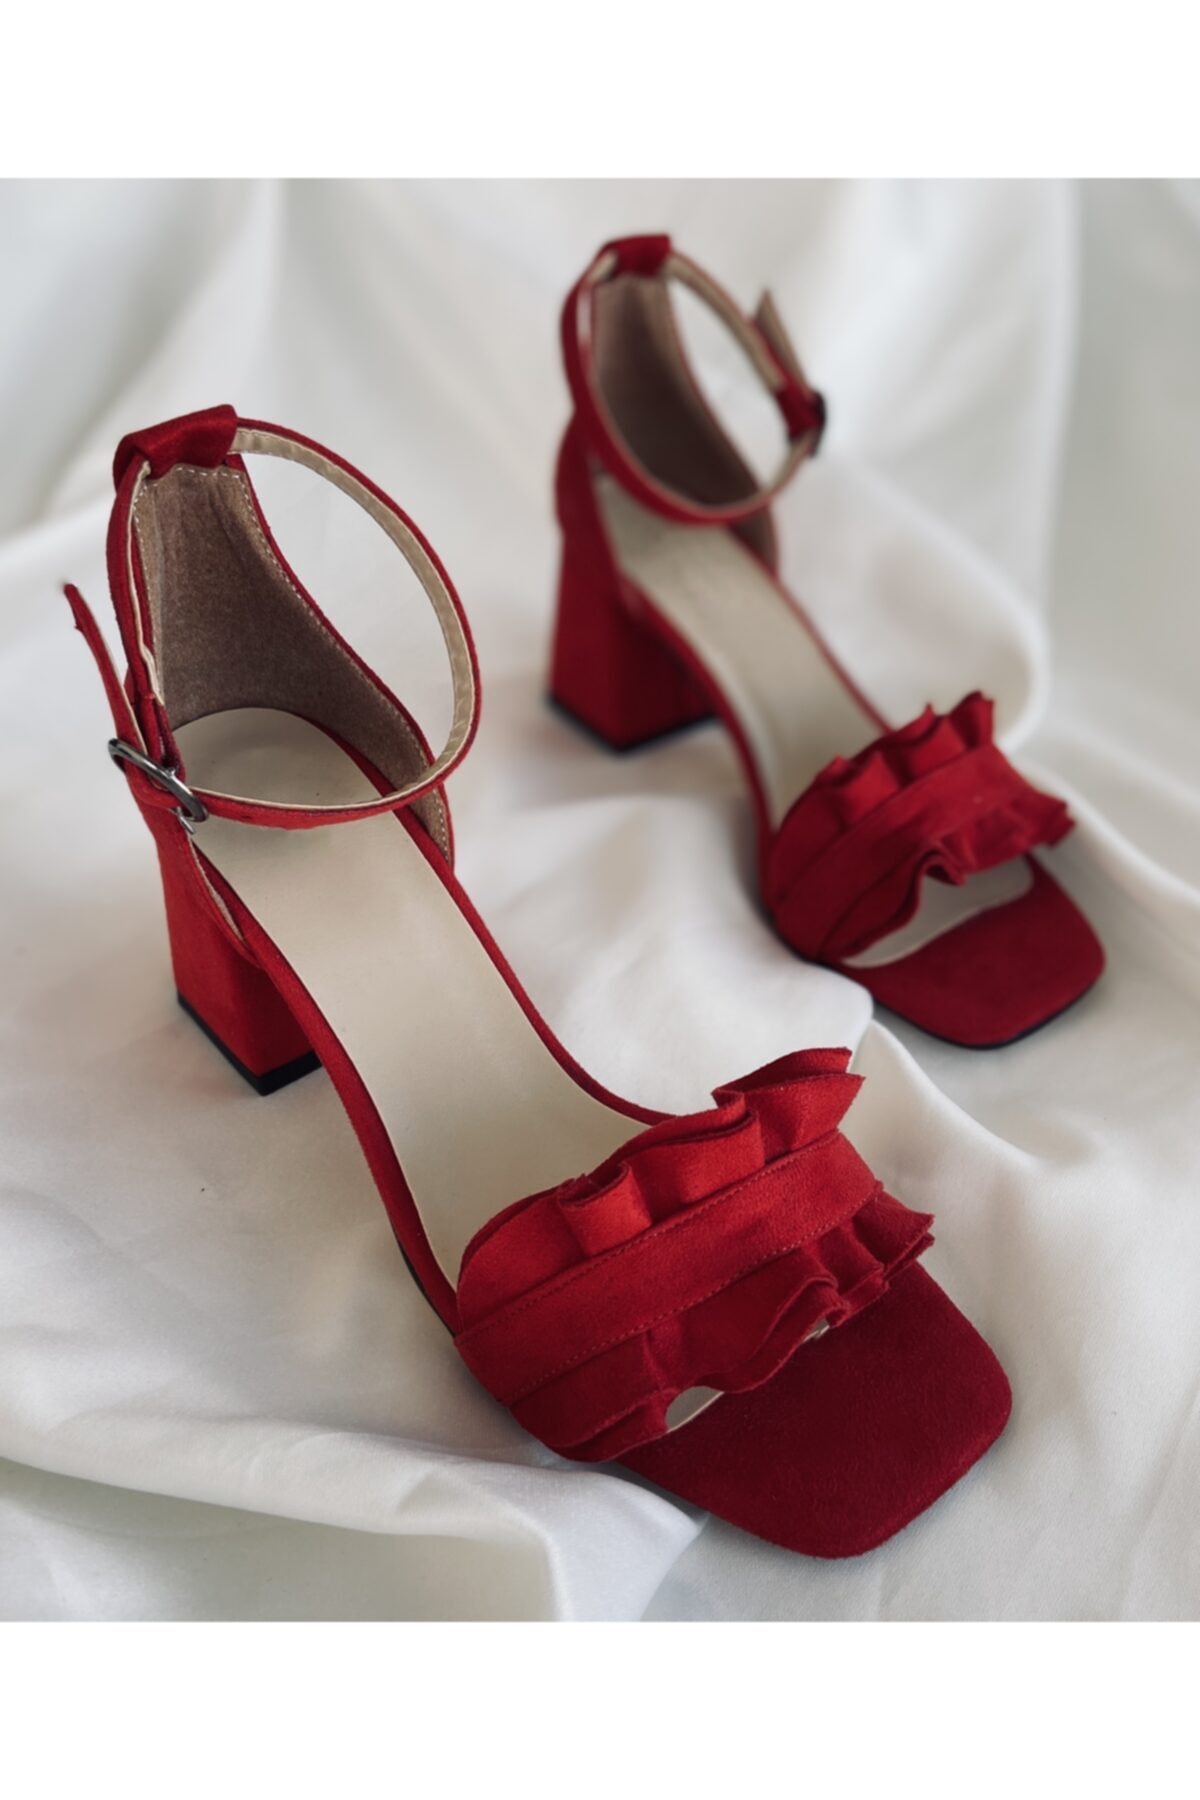 Pine Shoes Fırfırlı Kırmızı Süet Topuklu Ayakkabı